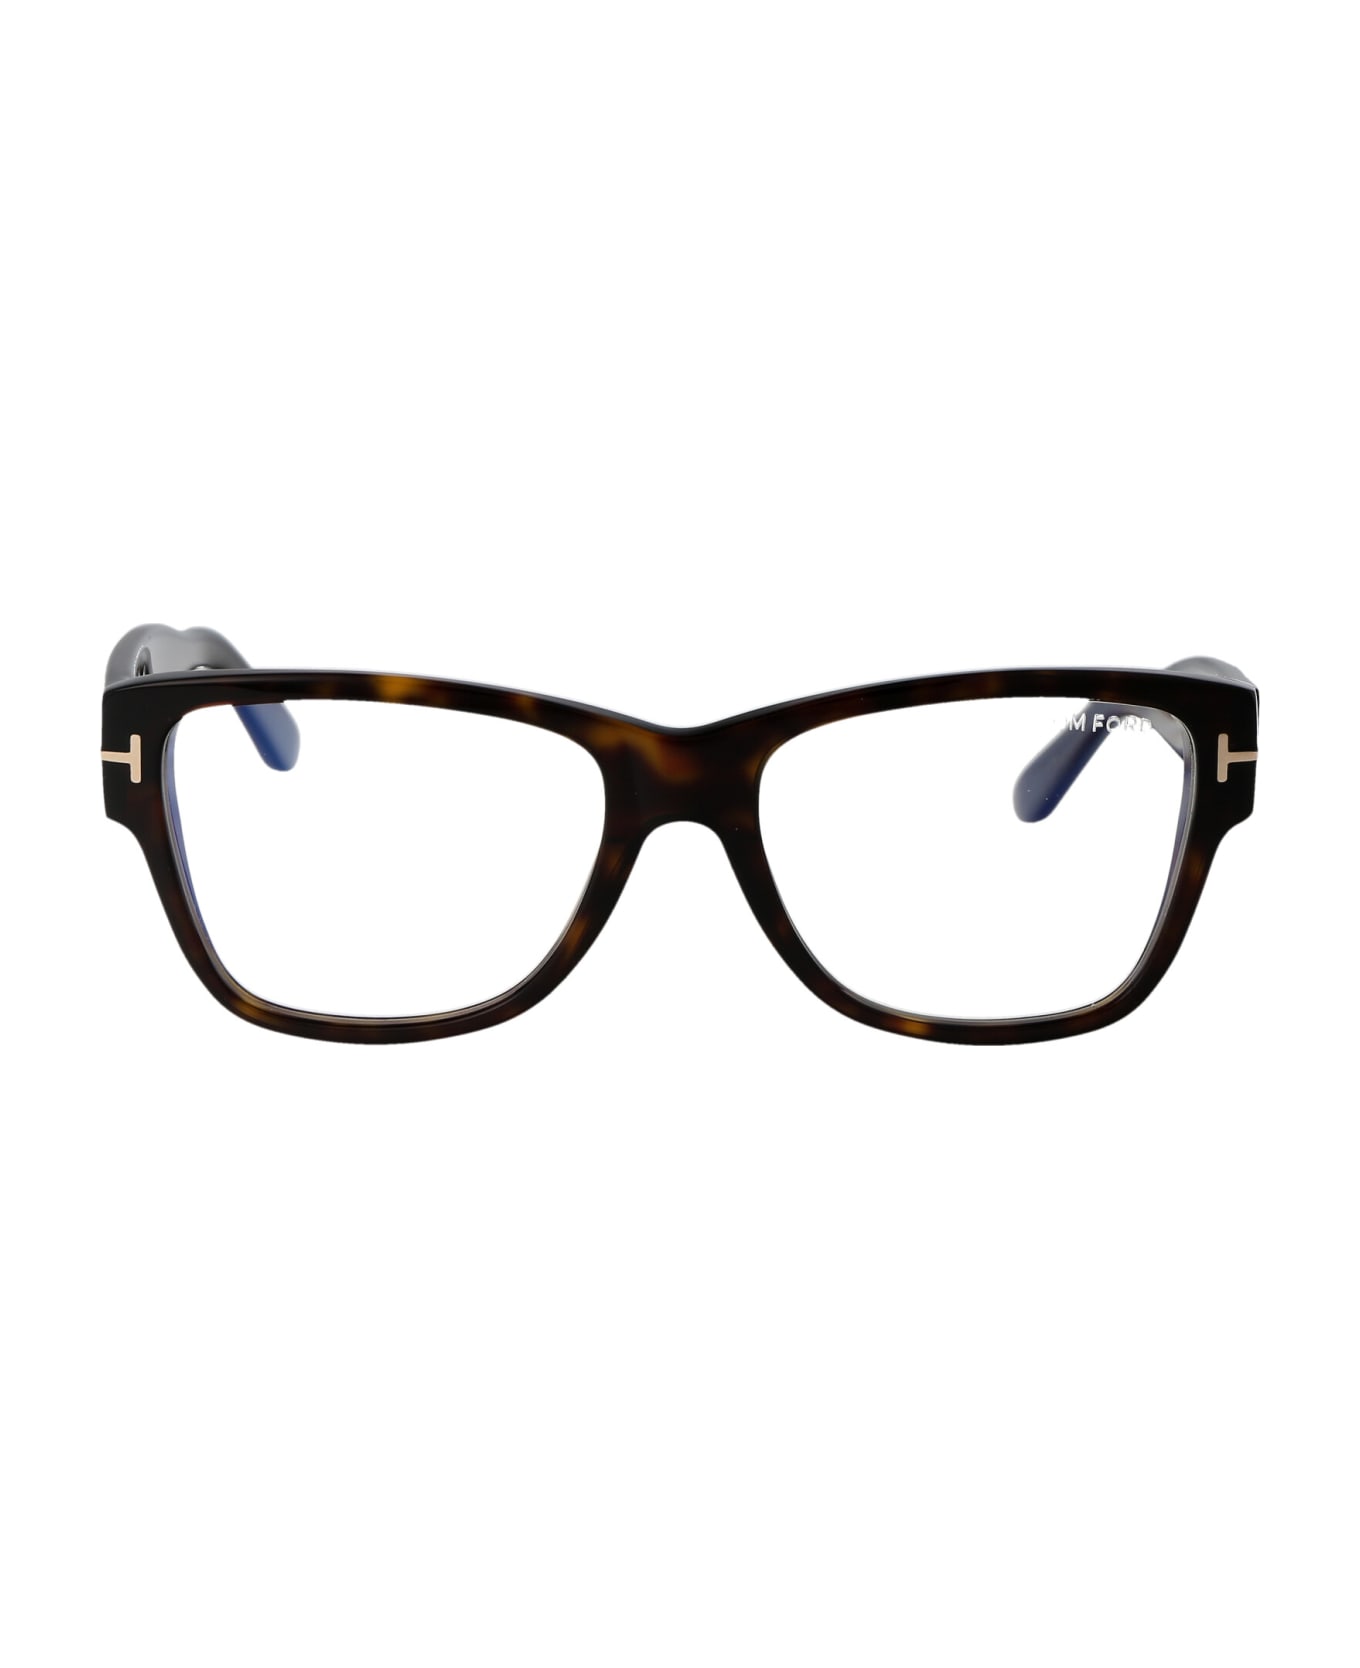 Tom Ford Eyewear Ft5878-b Glasses - 052 Avana Scura